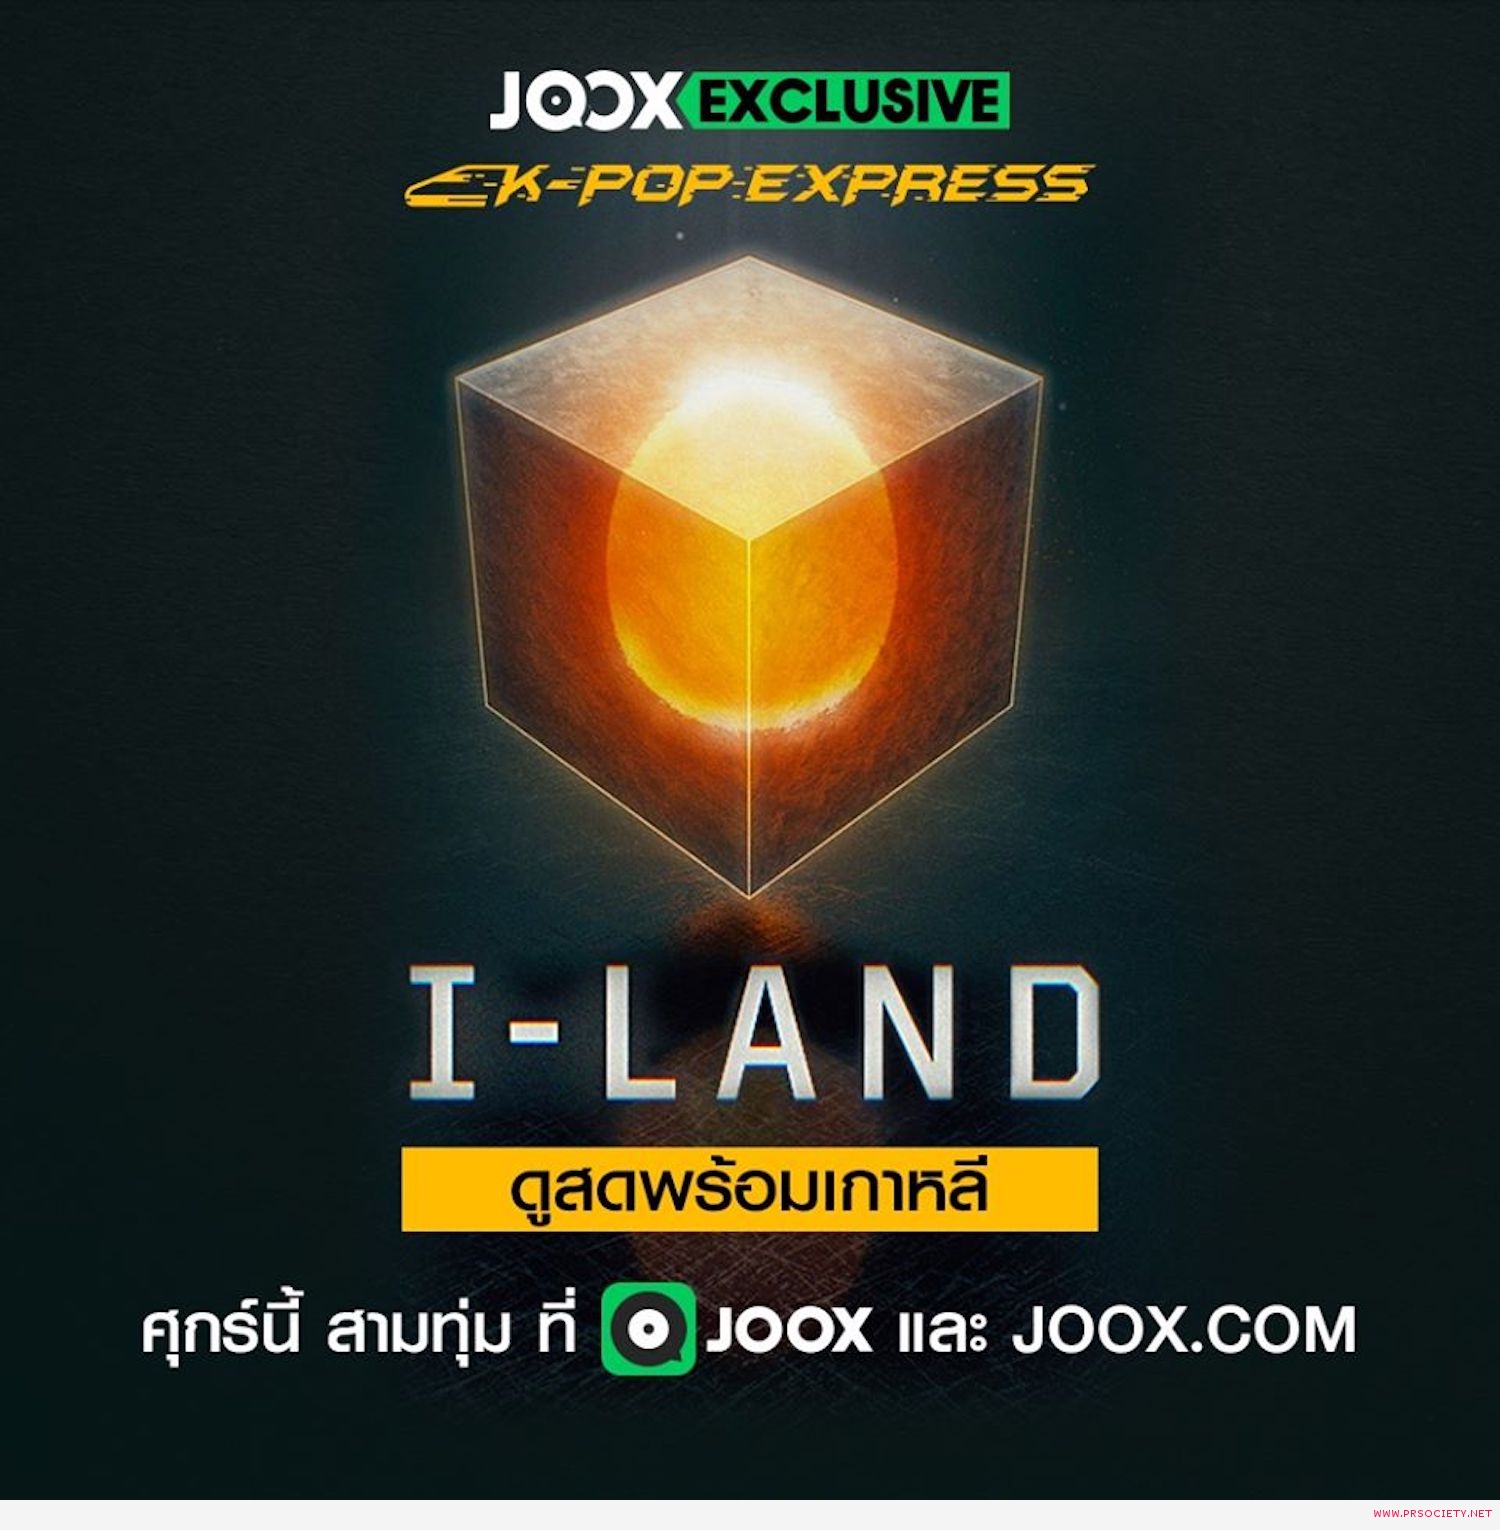 I-LAND (1)